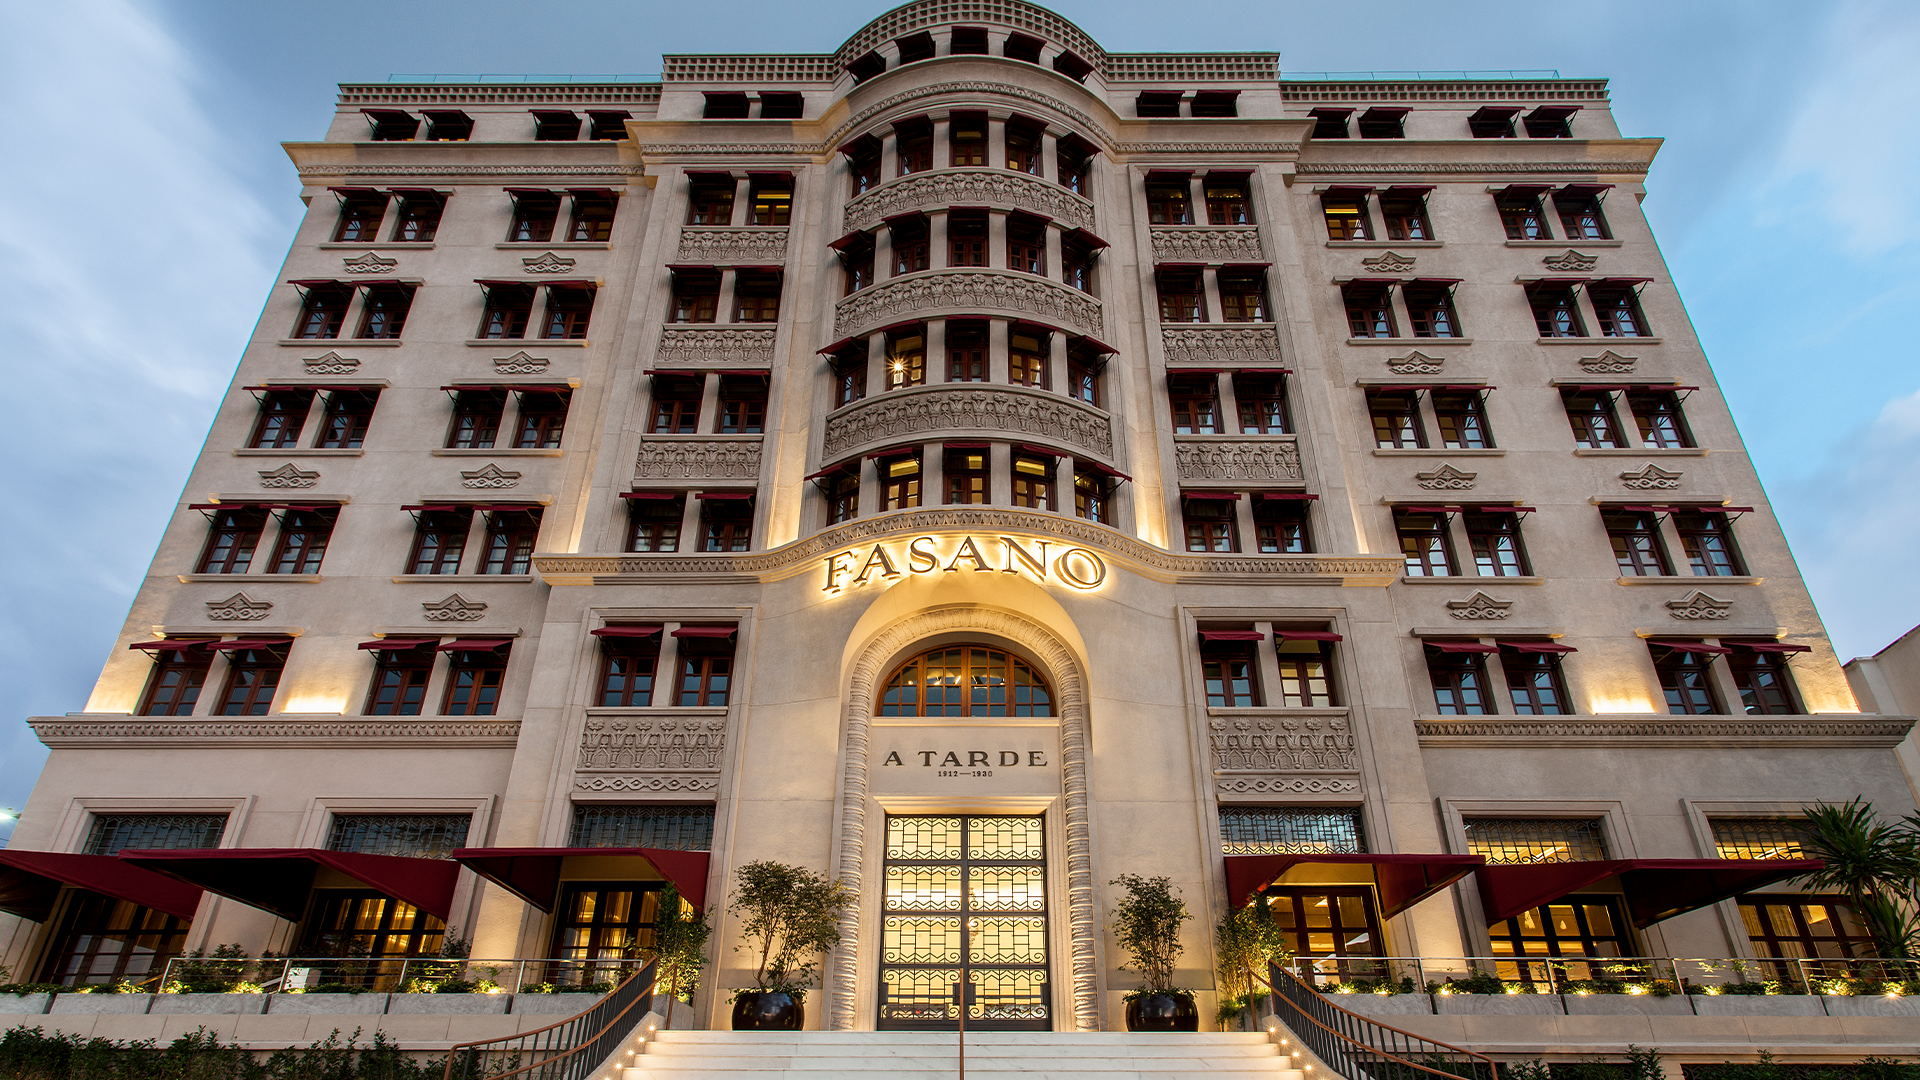 Fasano-Salvador-Hotel